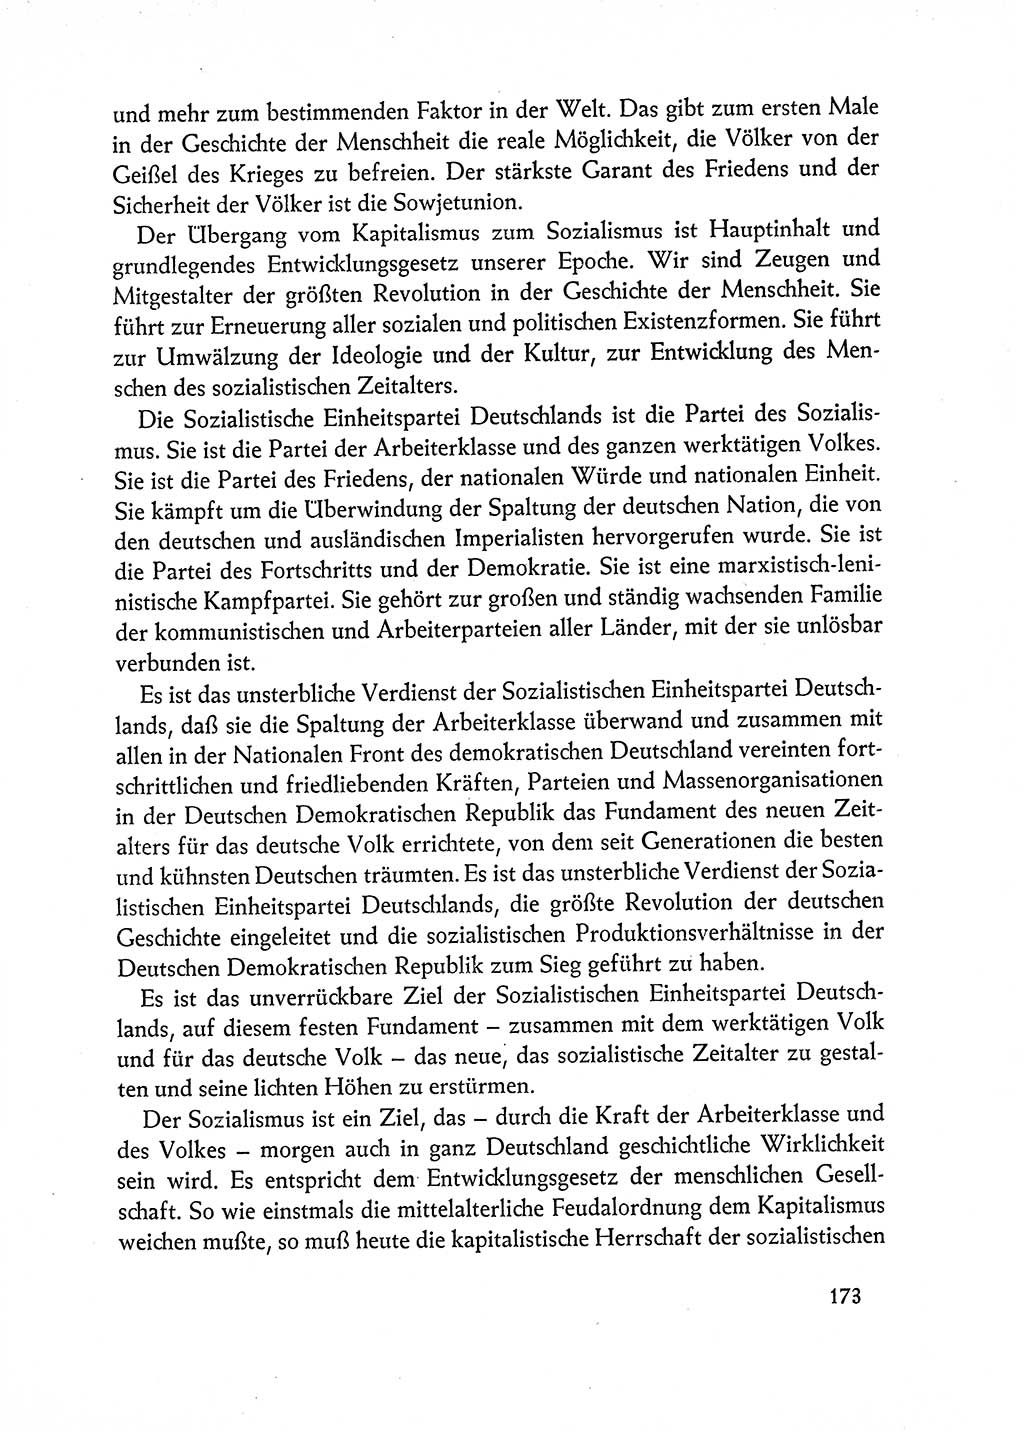 Dokumente der Sozialistischen Einheitspartei Deutschlands (SED) [Deutsche Demokratische Republik (DDR)] 1962-1963, Seite 173 (Dok. SED DDR 1962-1963, S. 173)